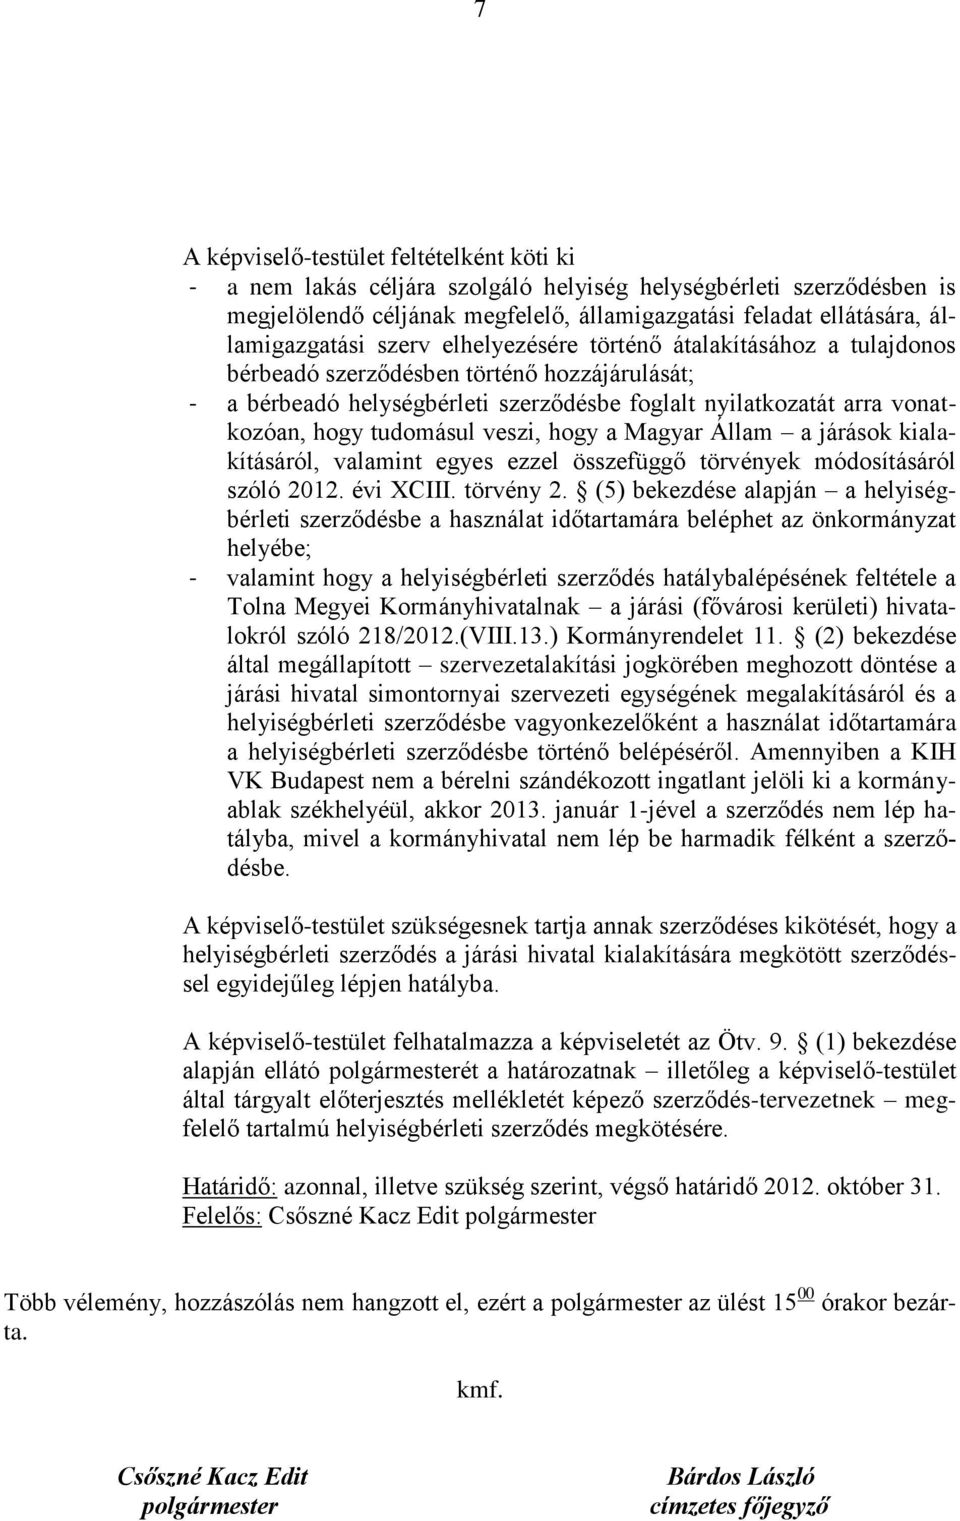 veszi, hogy a Magyar Állam a járások kialakításáról, valamint egyes ezzel összefüggő törvények módosításáról szóló 2012. évi XCIII. törvény 2.